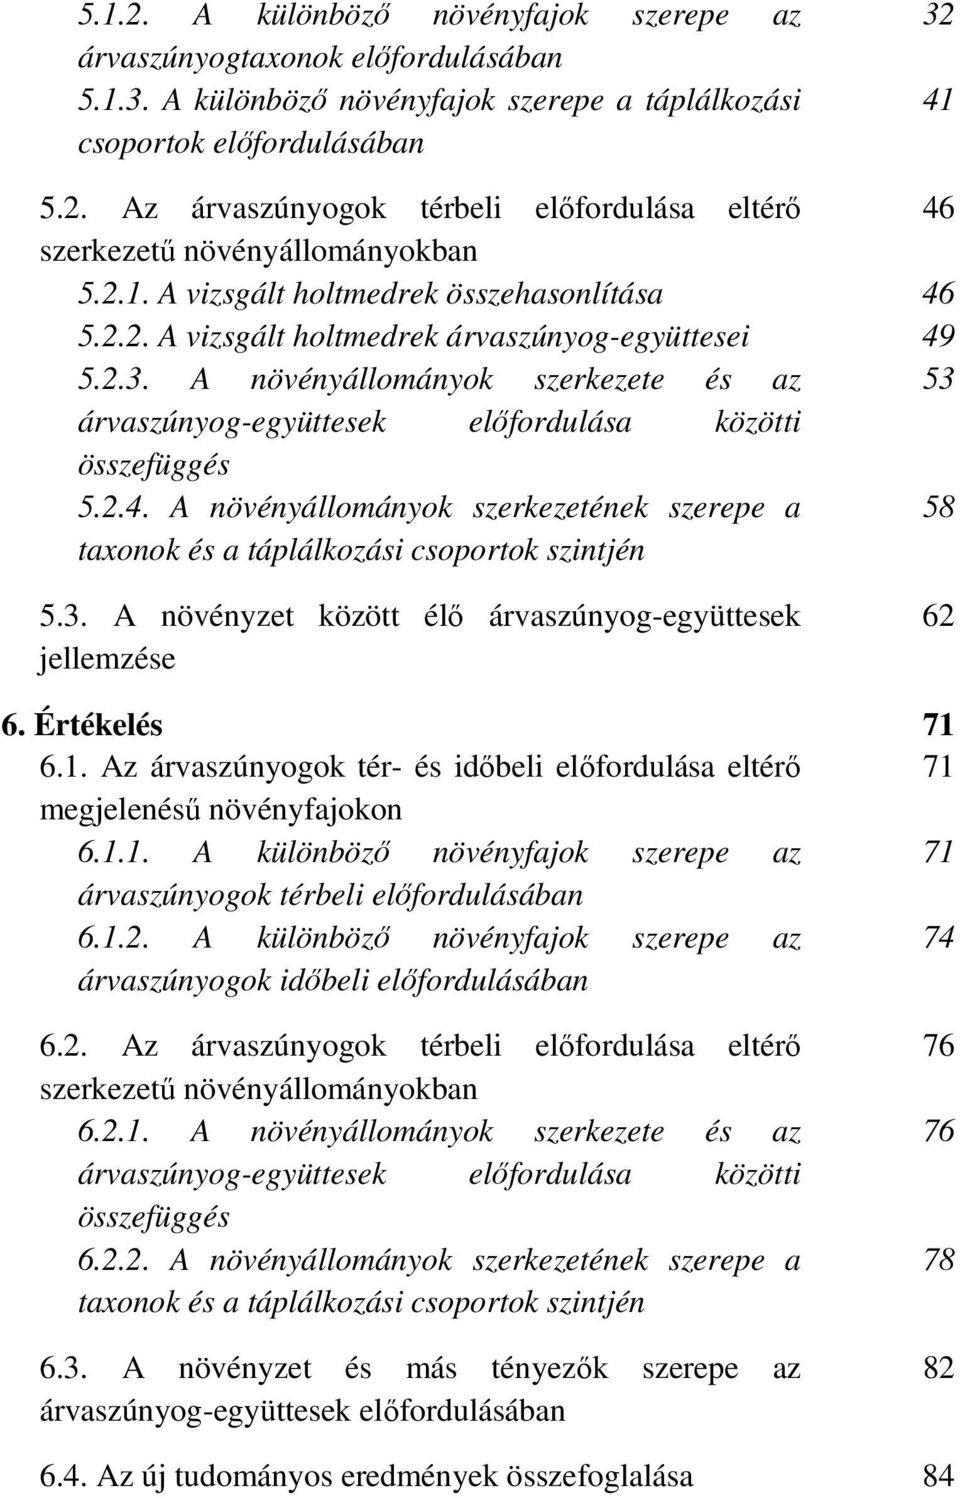 A növényállományok szerkezete és az 53 árvaszúnyog-együttesek elıfordulása közötti összefüggés 5.2.4. A növényállományok szerkezetének szerepe a 58 taxonok és a táplálkozási csoportok szintjén 5.3. A növényzet között élı árvaszúnyog-együttesek jellemzése 62 6.